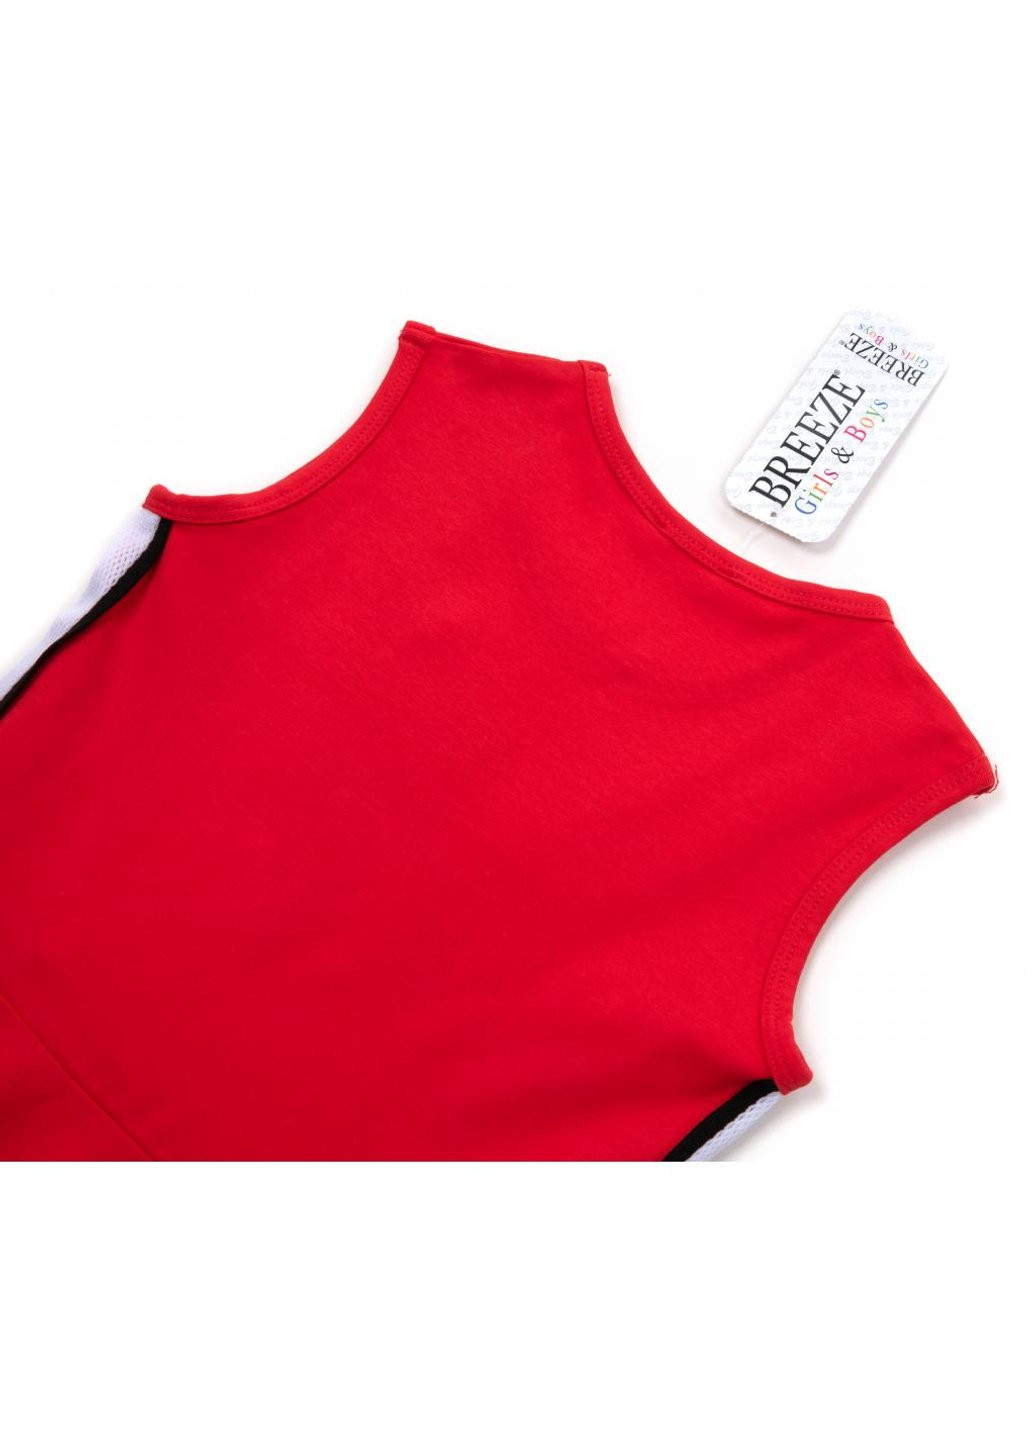 Красное платье со звездой (14410-164g-red) Breeze (257208138)